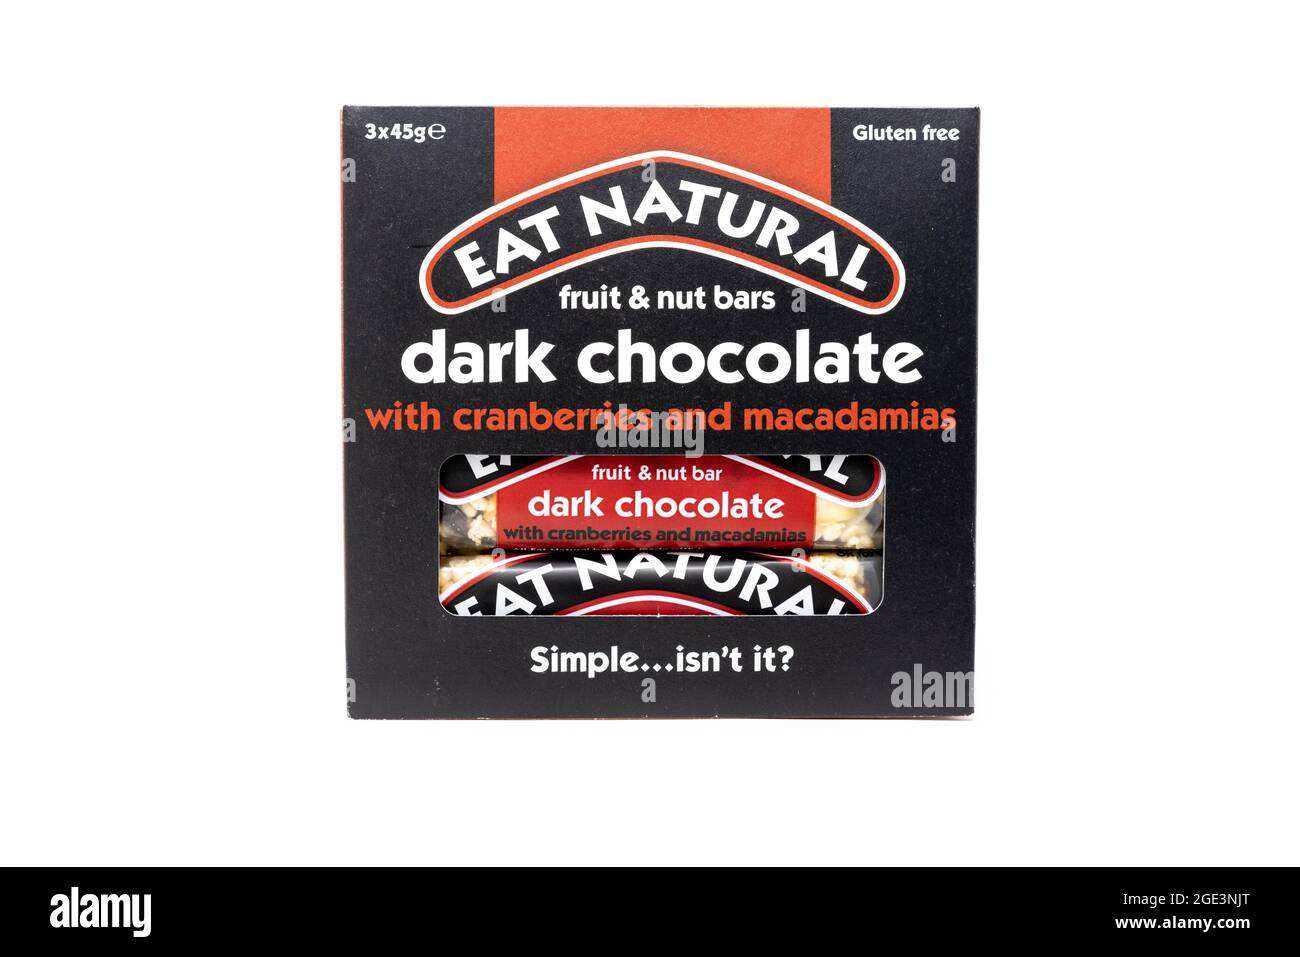 Mangez des barres de canneberges et de macadamia au chocolat noir naturel Banque D'Images